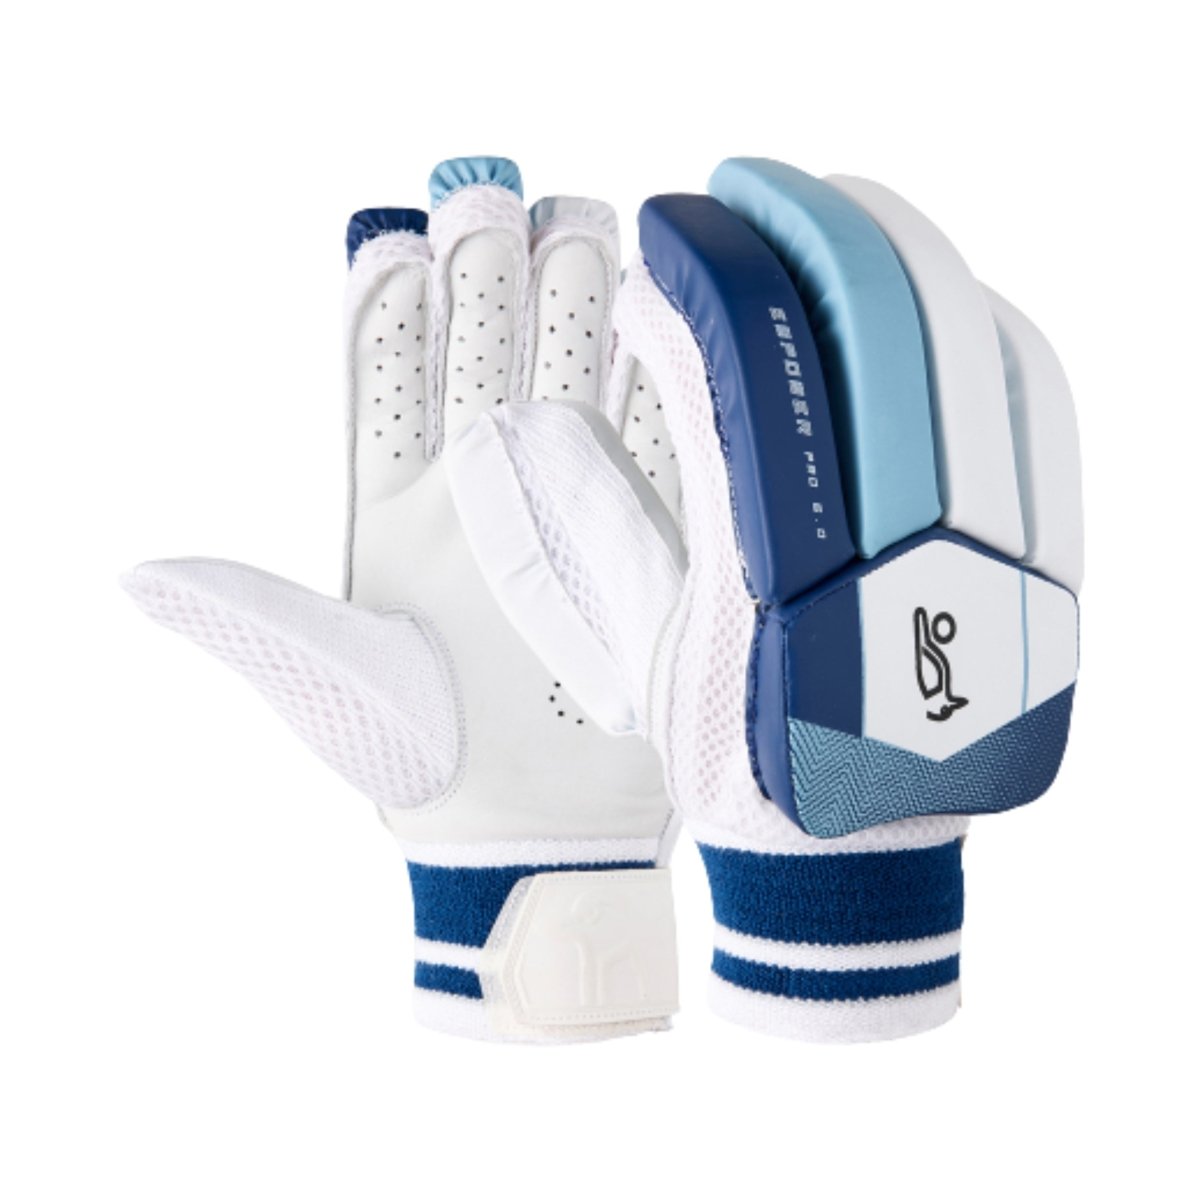 Kookaburra Empower Pro 6.0 Cricket Batting Gloves Junior - Acrux Sports